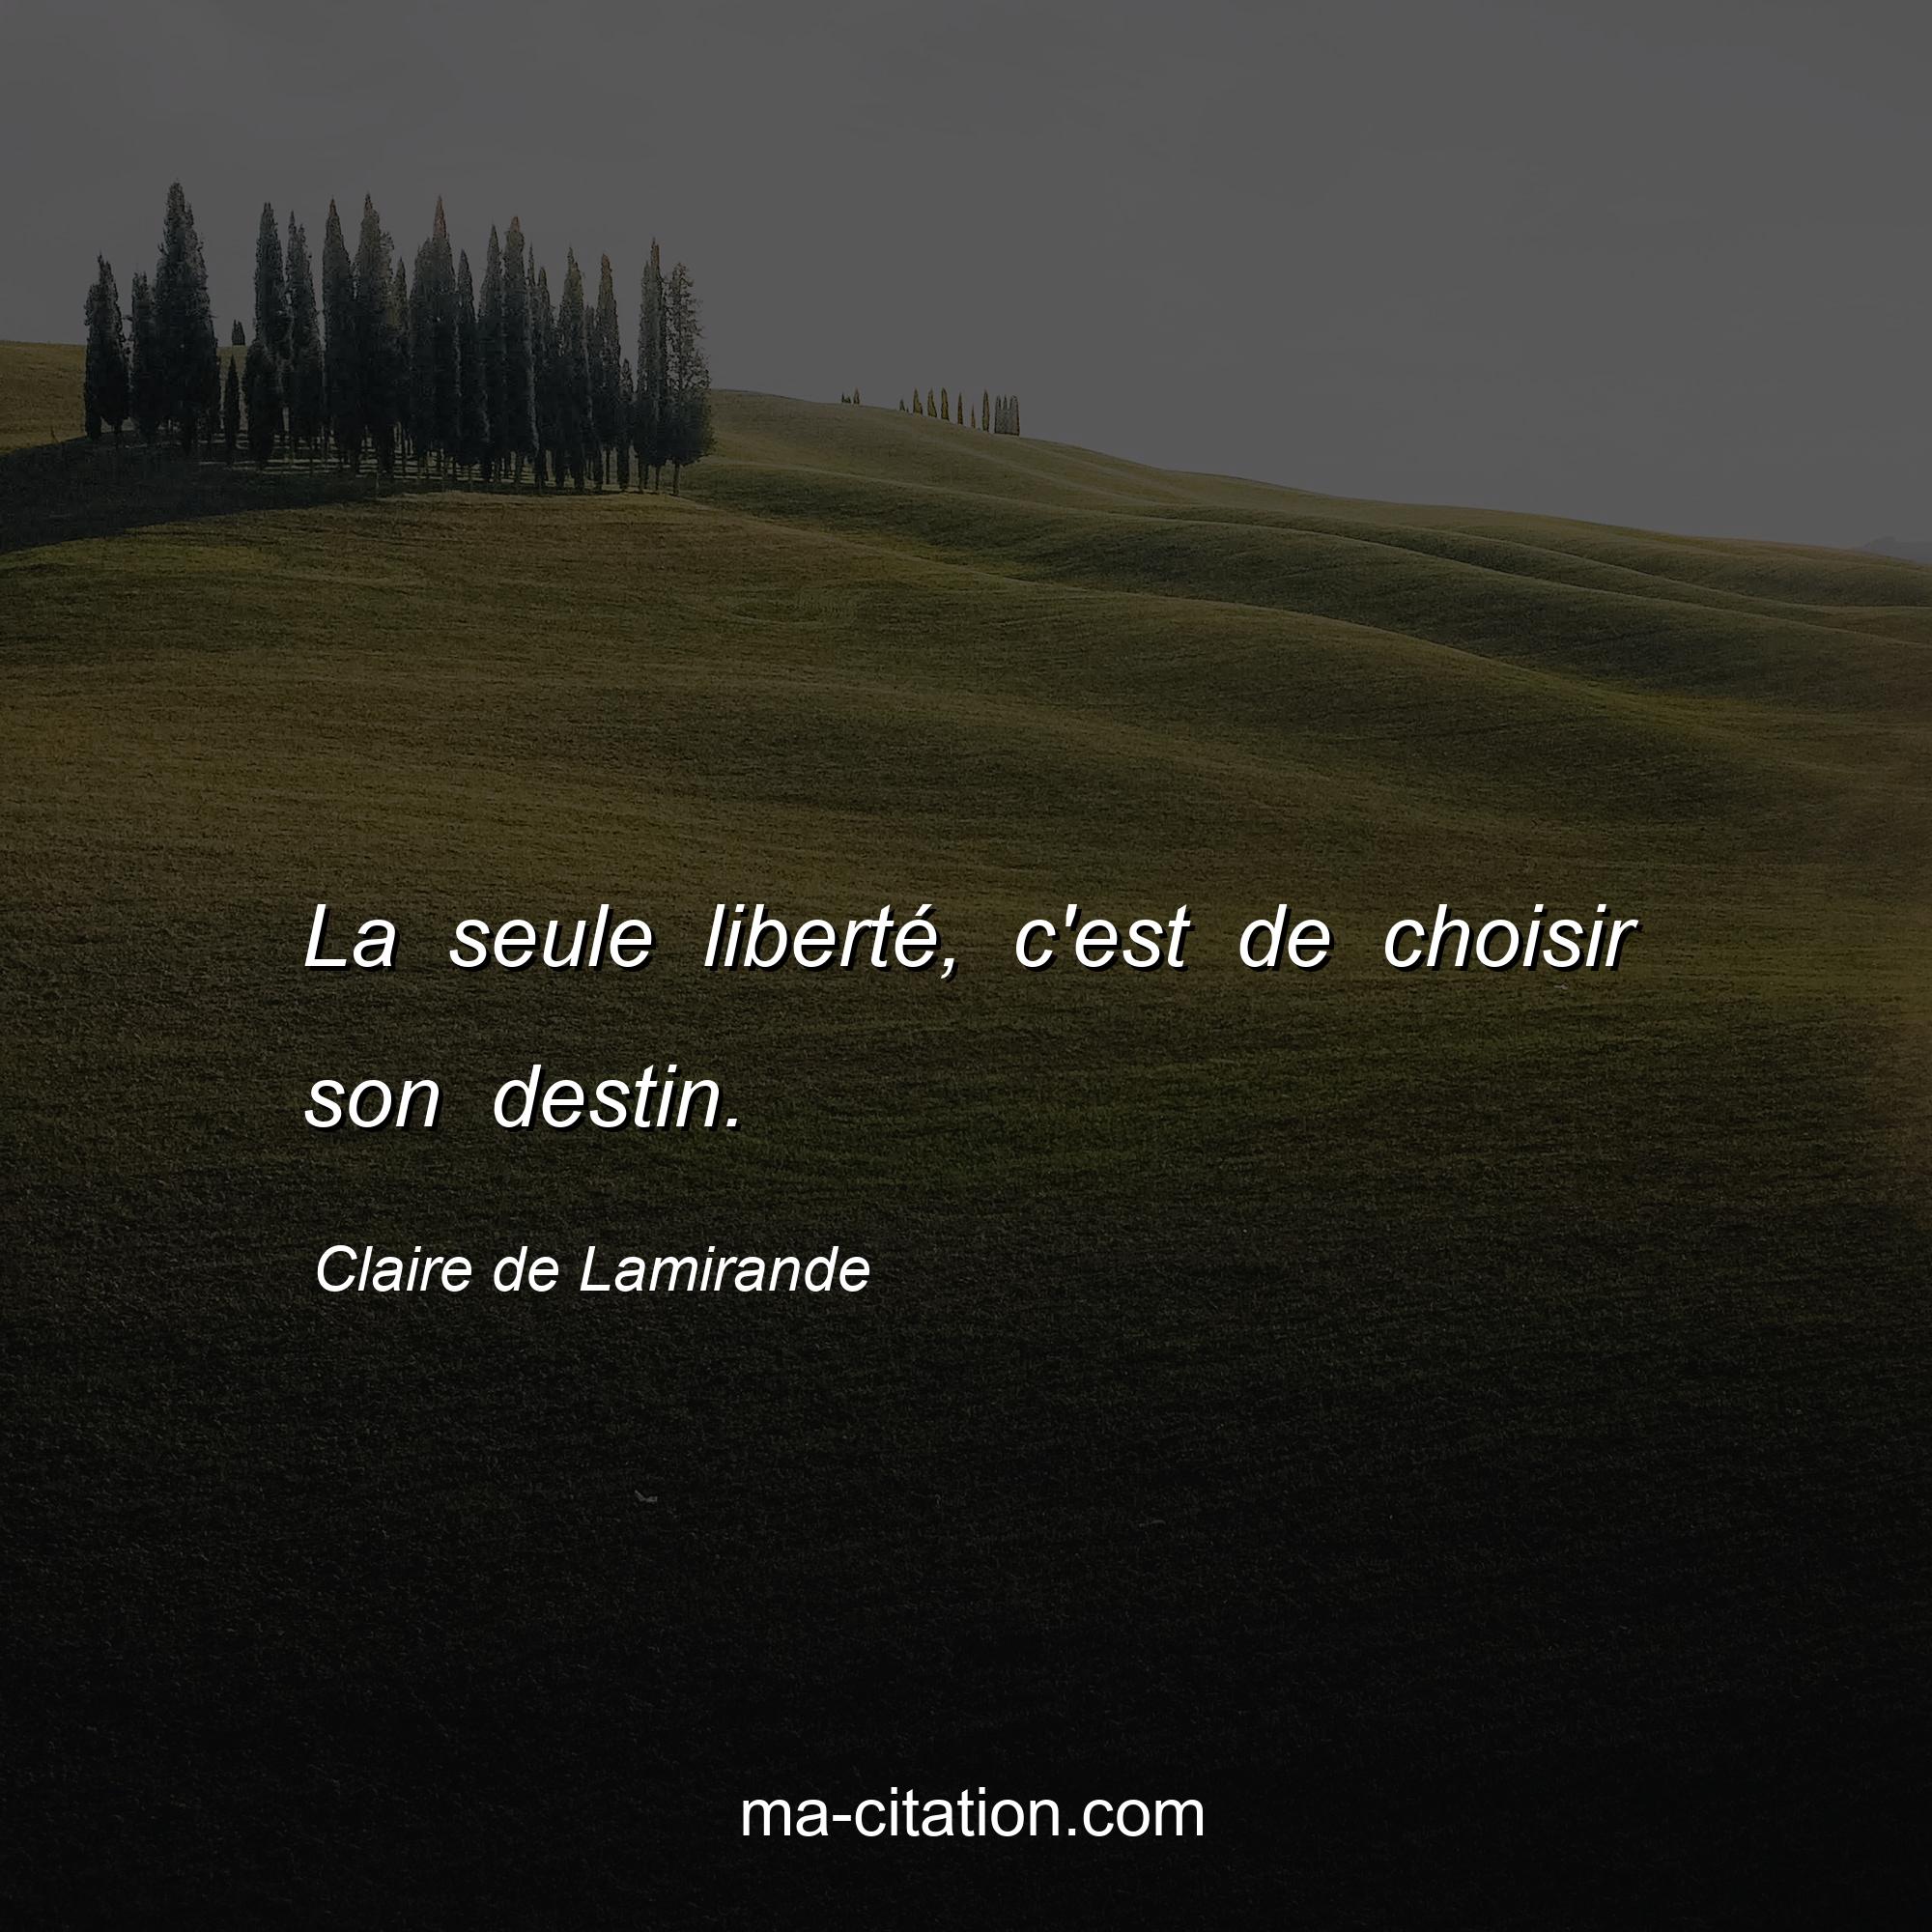 Claire de Lamirande : La seule liberté, c'est de choisir son destin.